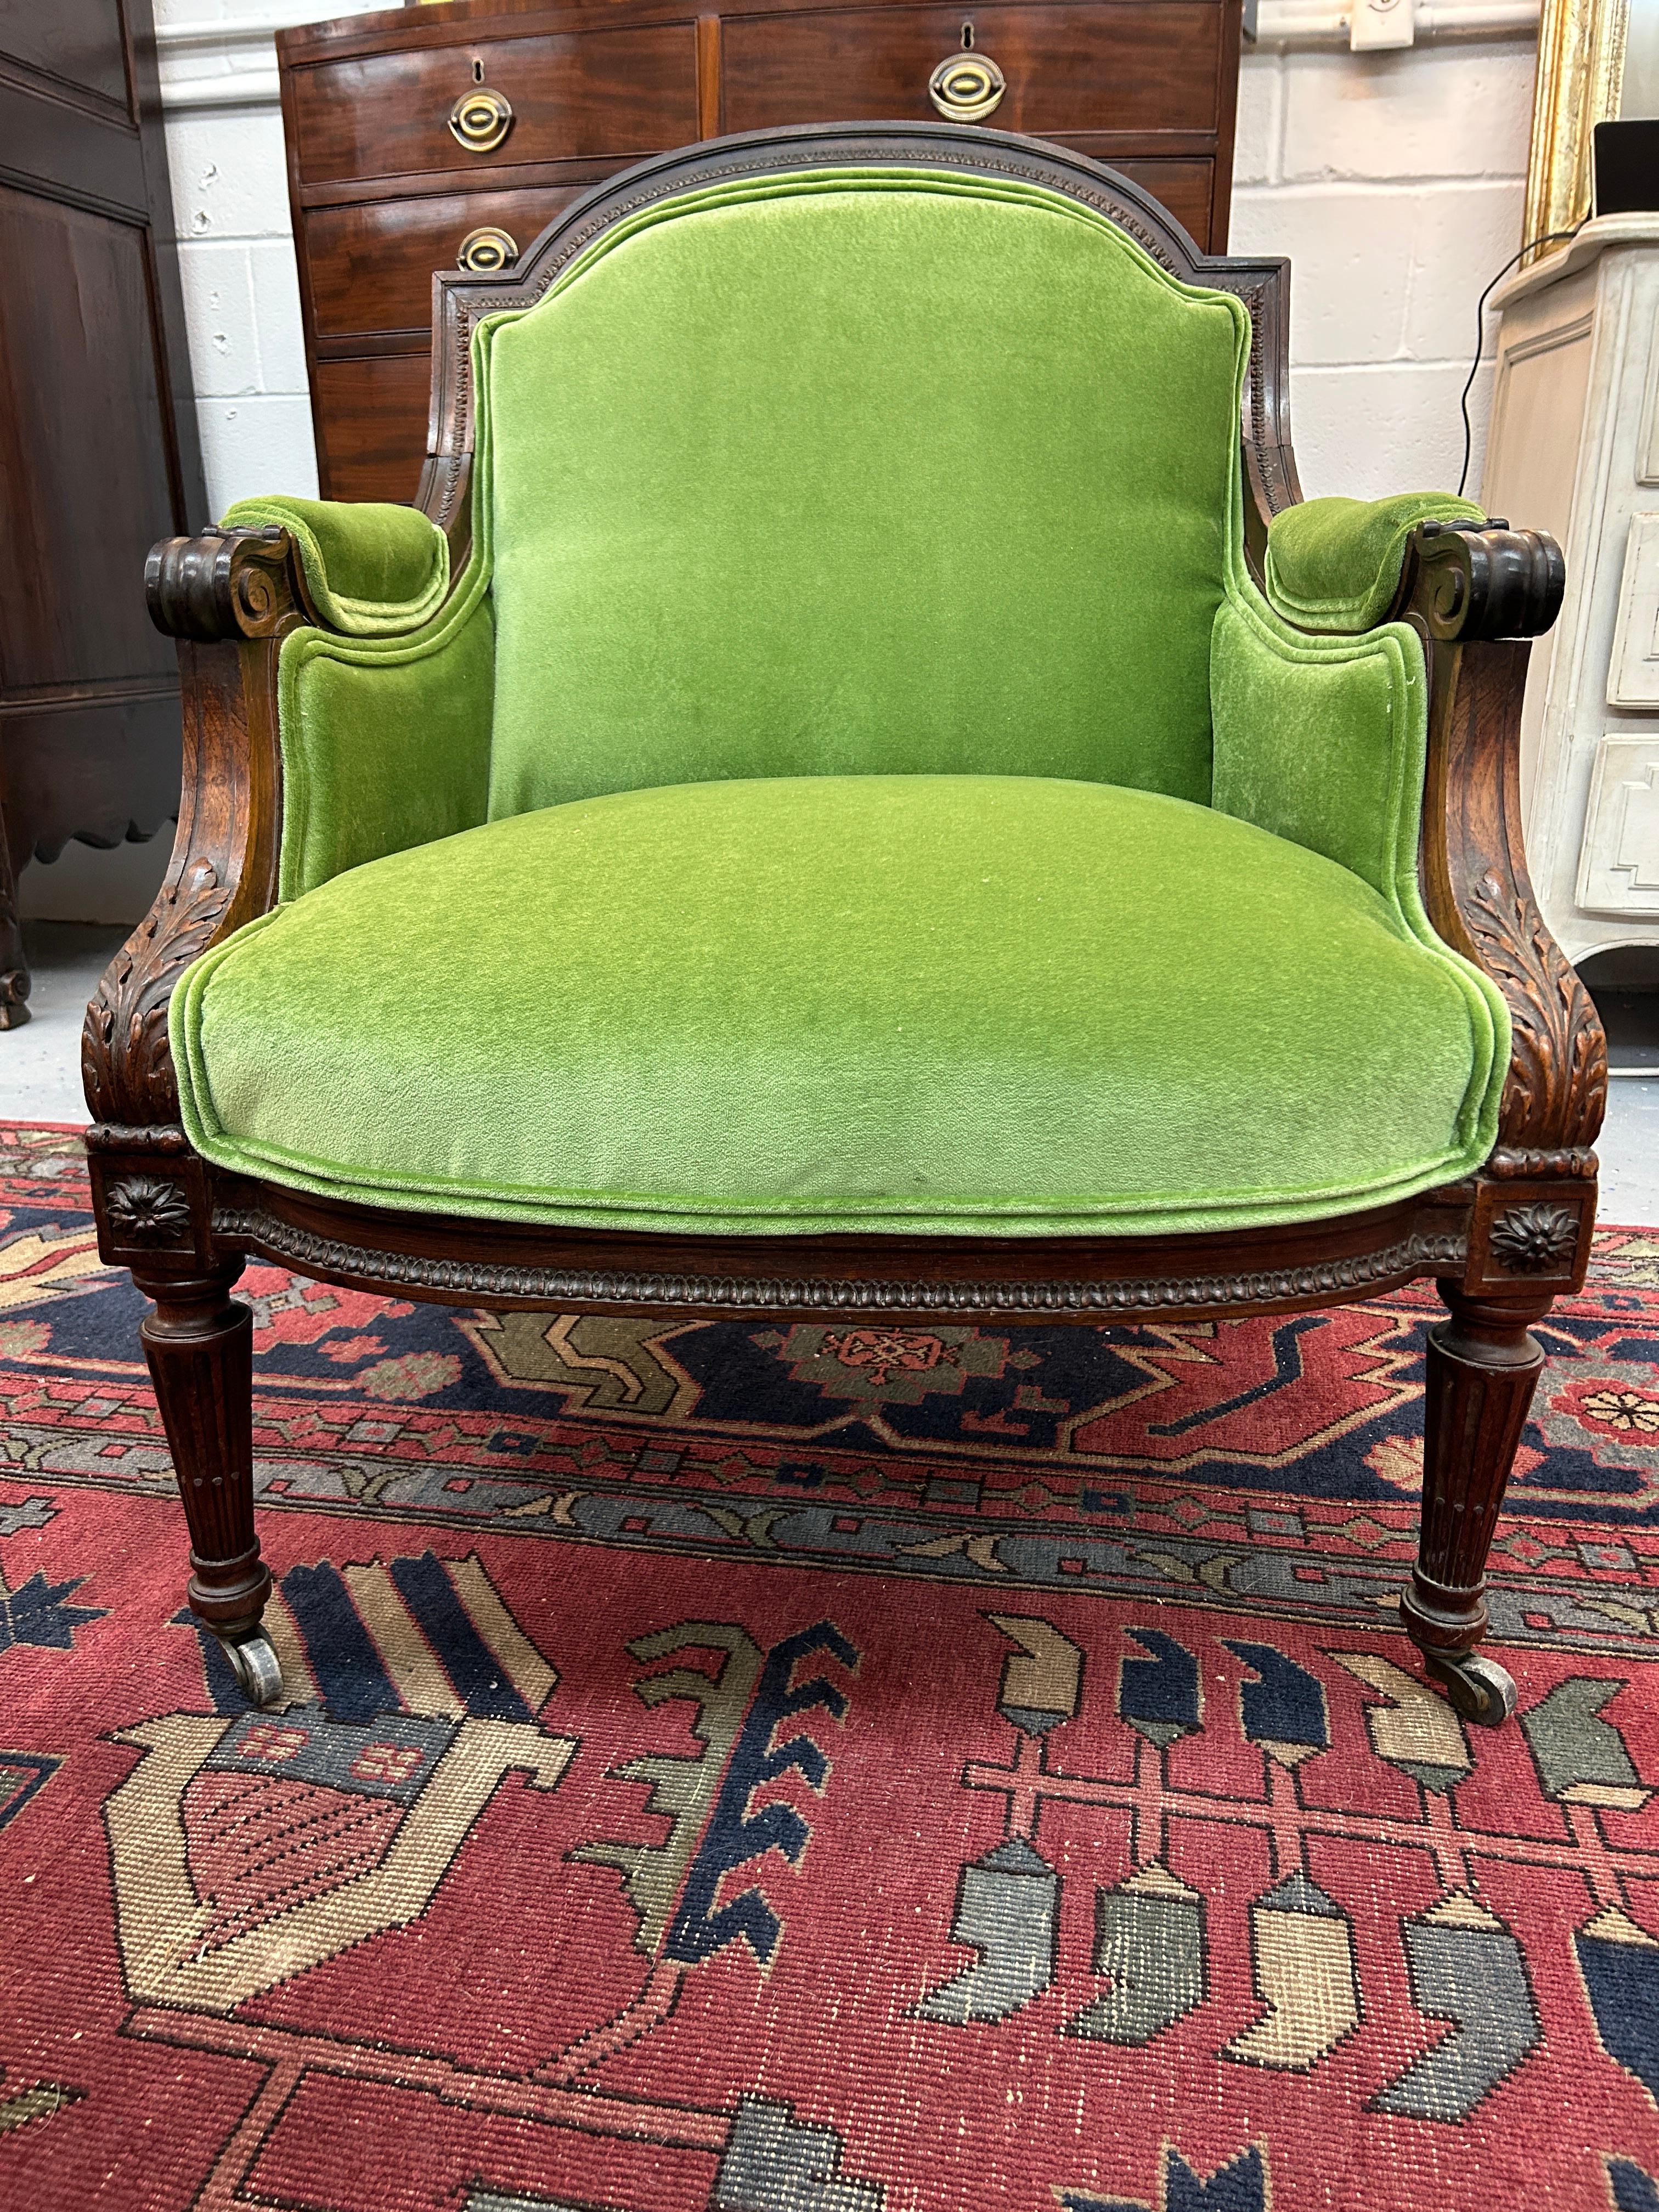 La chaise Bergère en bois de rose de style Louis XVI est un véritable chef-d'œuvre d'artisanat et de style. Cette chaise n'est pas seulement un meuble, c'est une œuvre d'art qui élèvera votre maison ou votre projet à un nouveau niveau de